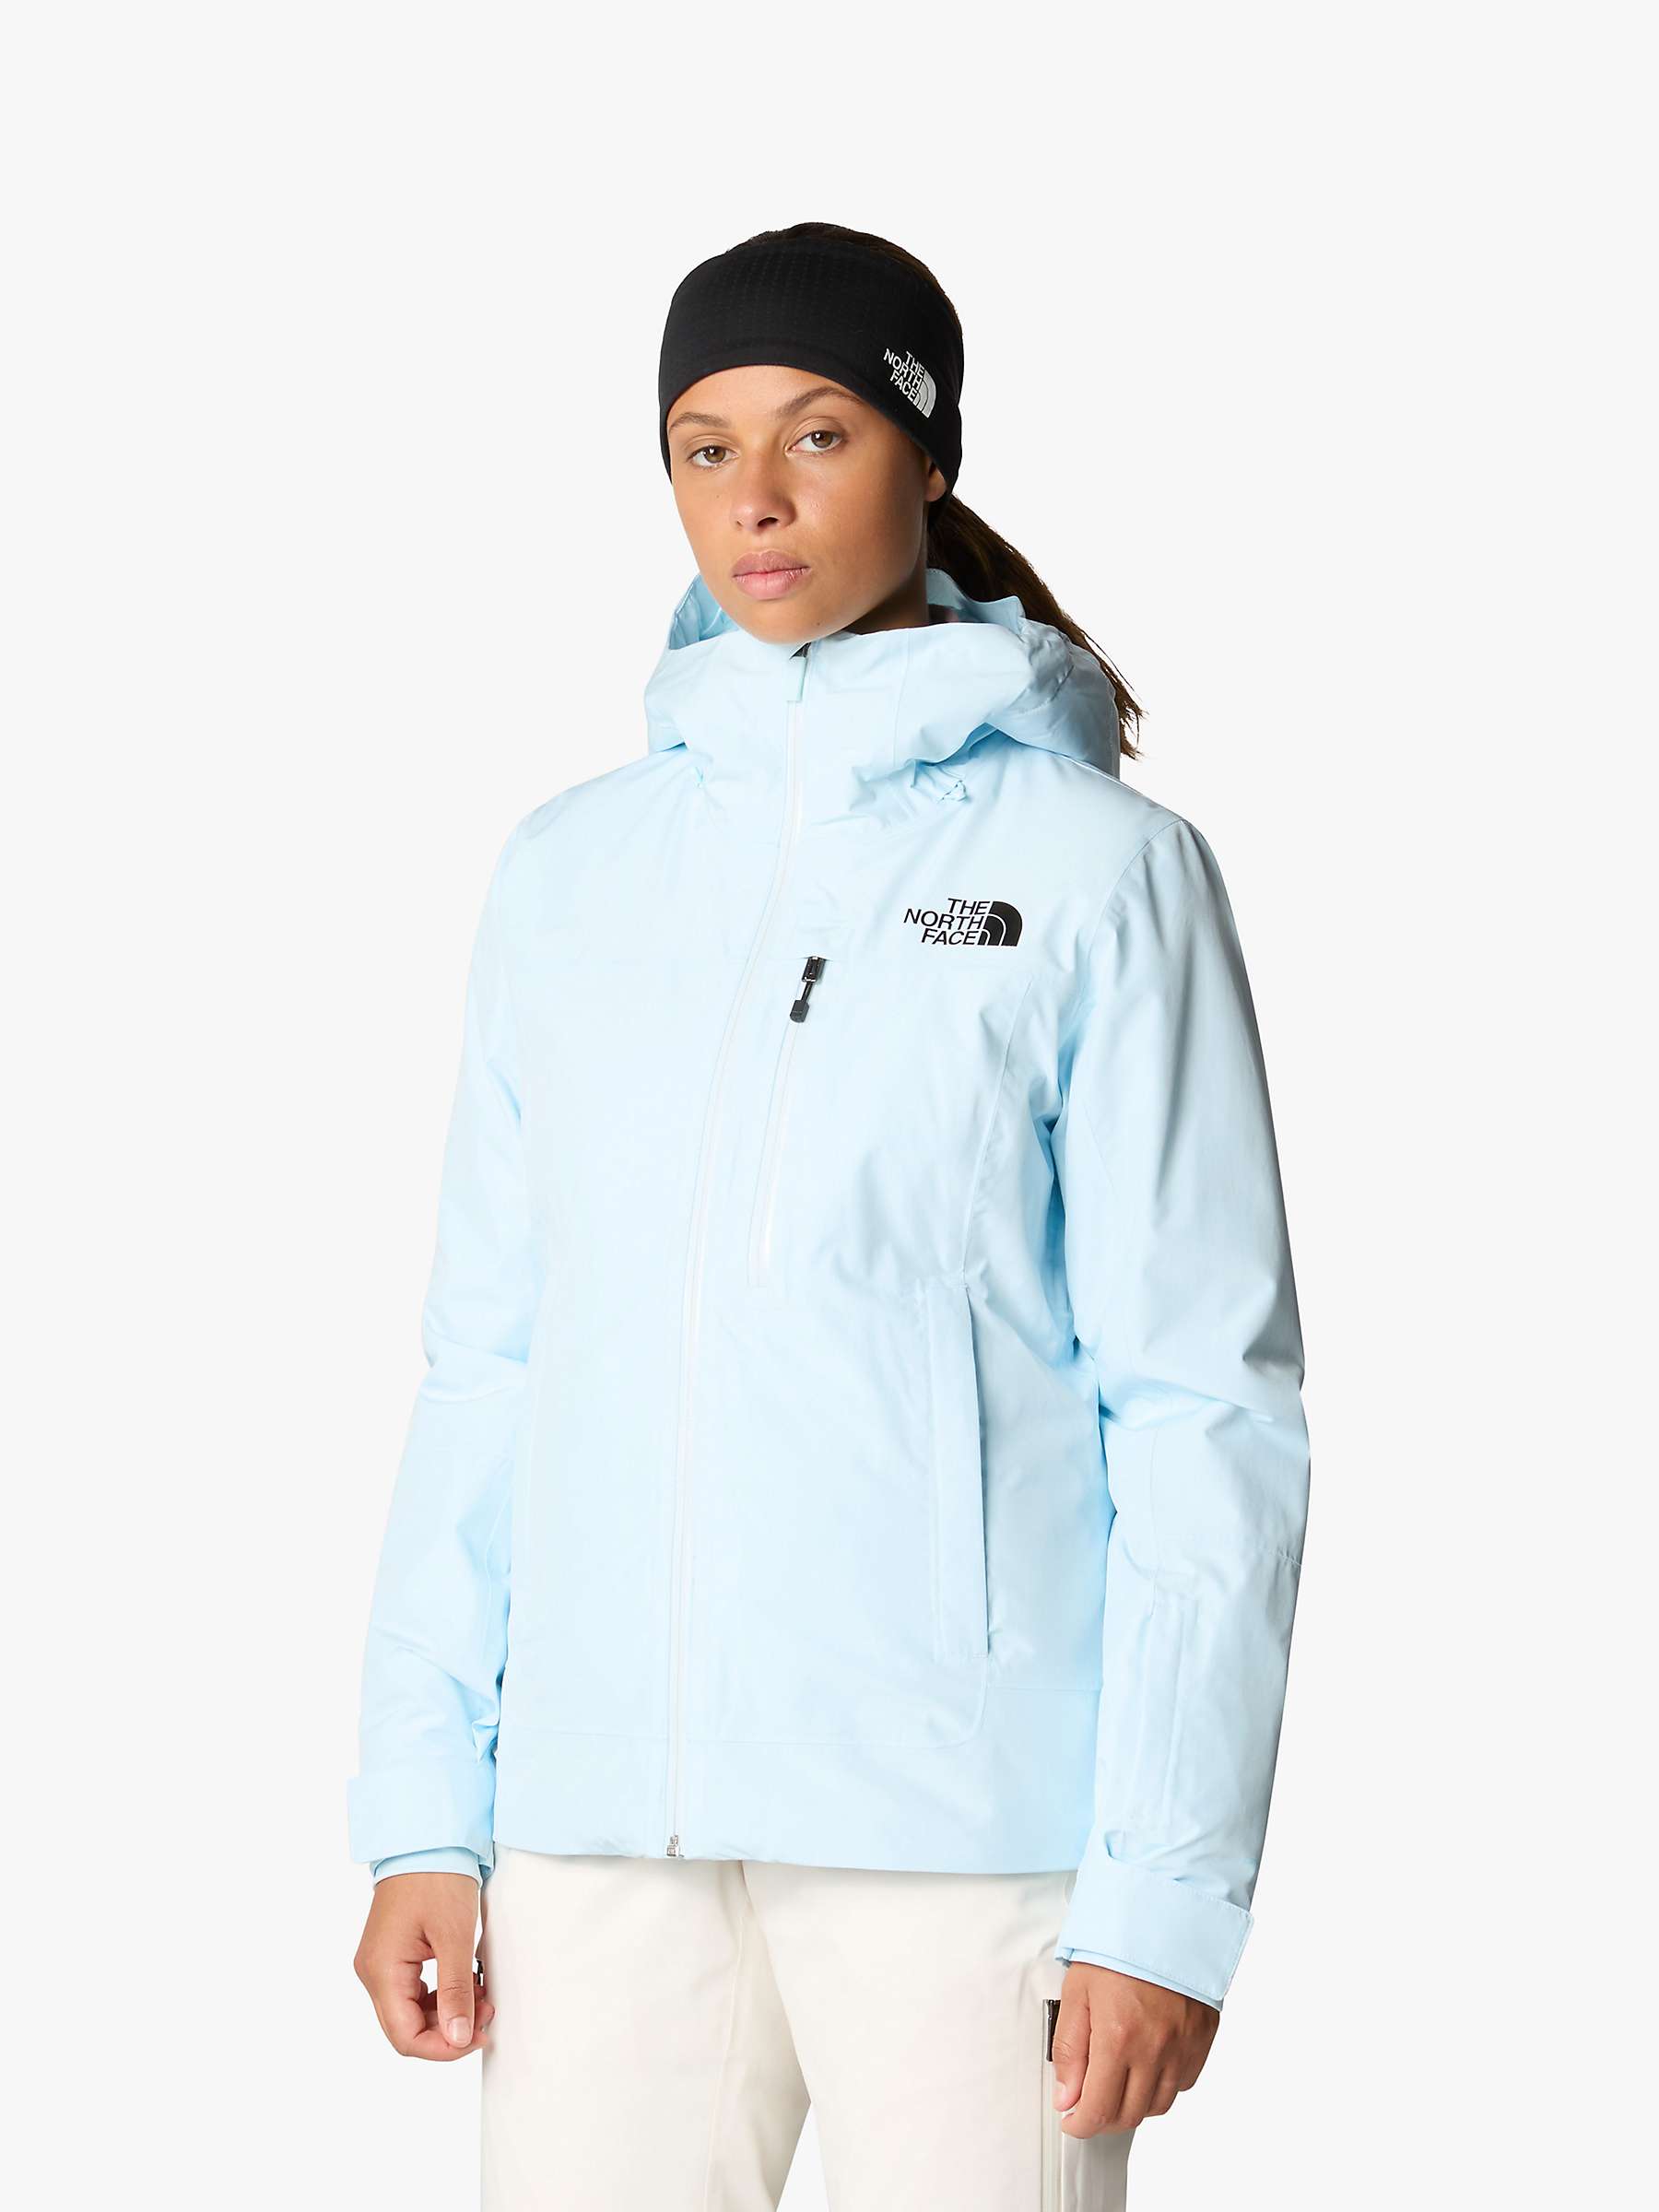 Buy The North Face Descendit Ski Jacket Online at johnlewis.com